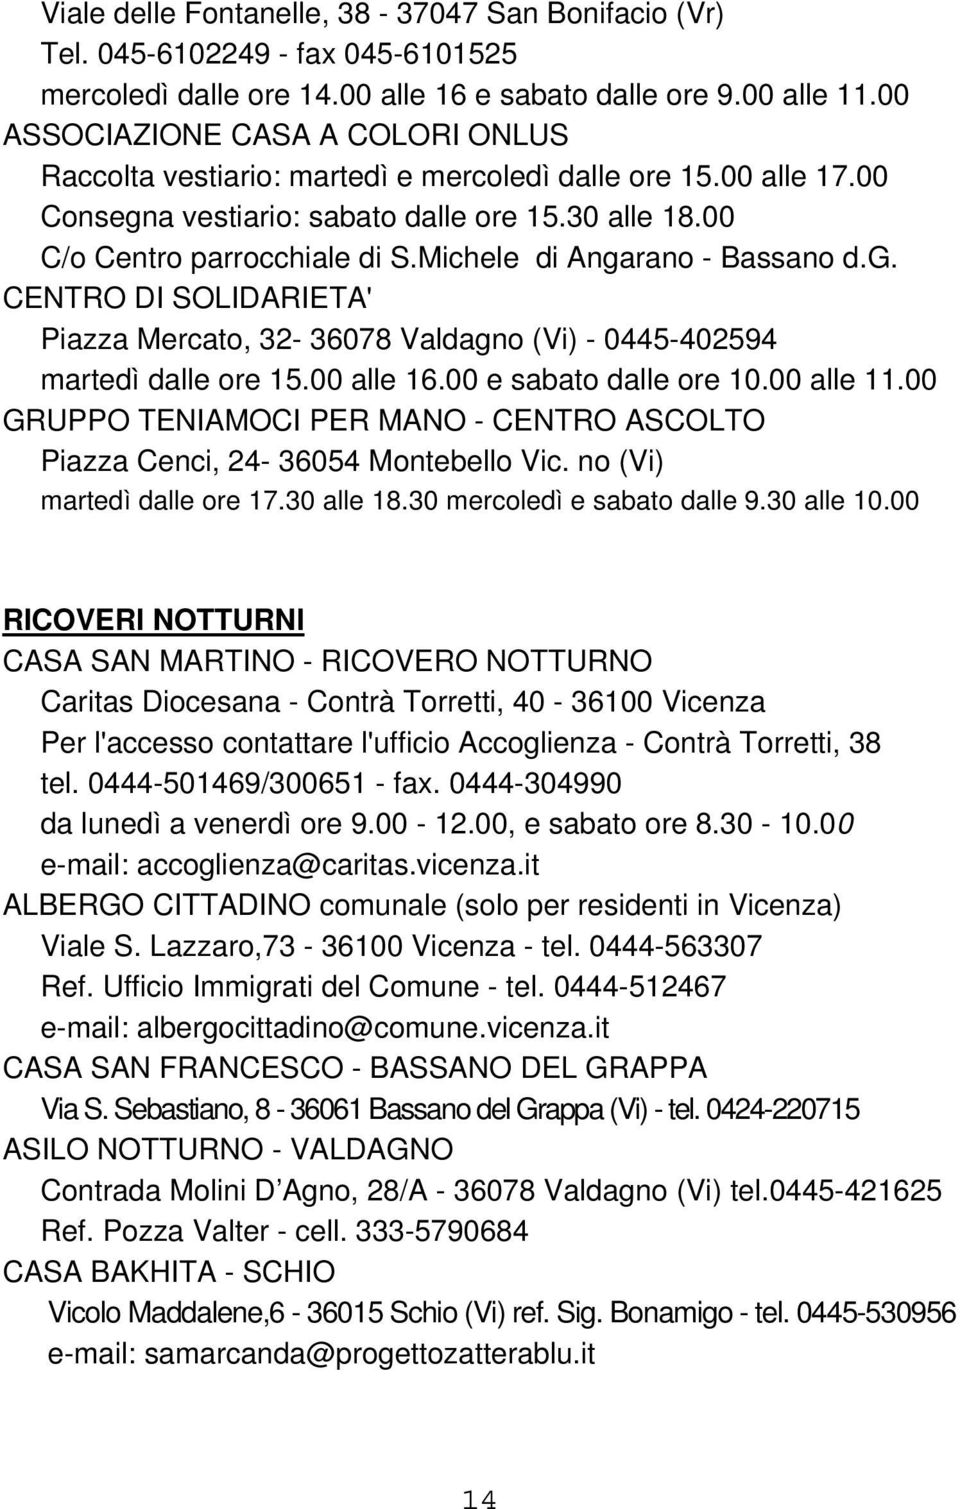 Michele di Angarano - Bassano d.g. CENTRO DI SOLIDARIETA' Piazza Mercato, 32-36078 Valdagno (Vi) - 0445-402594 martedì dalle ore 15.00 alle 16.00 e sabato dalle ore 10.00 alle 11.